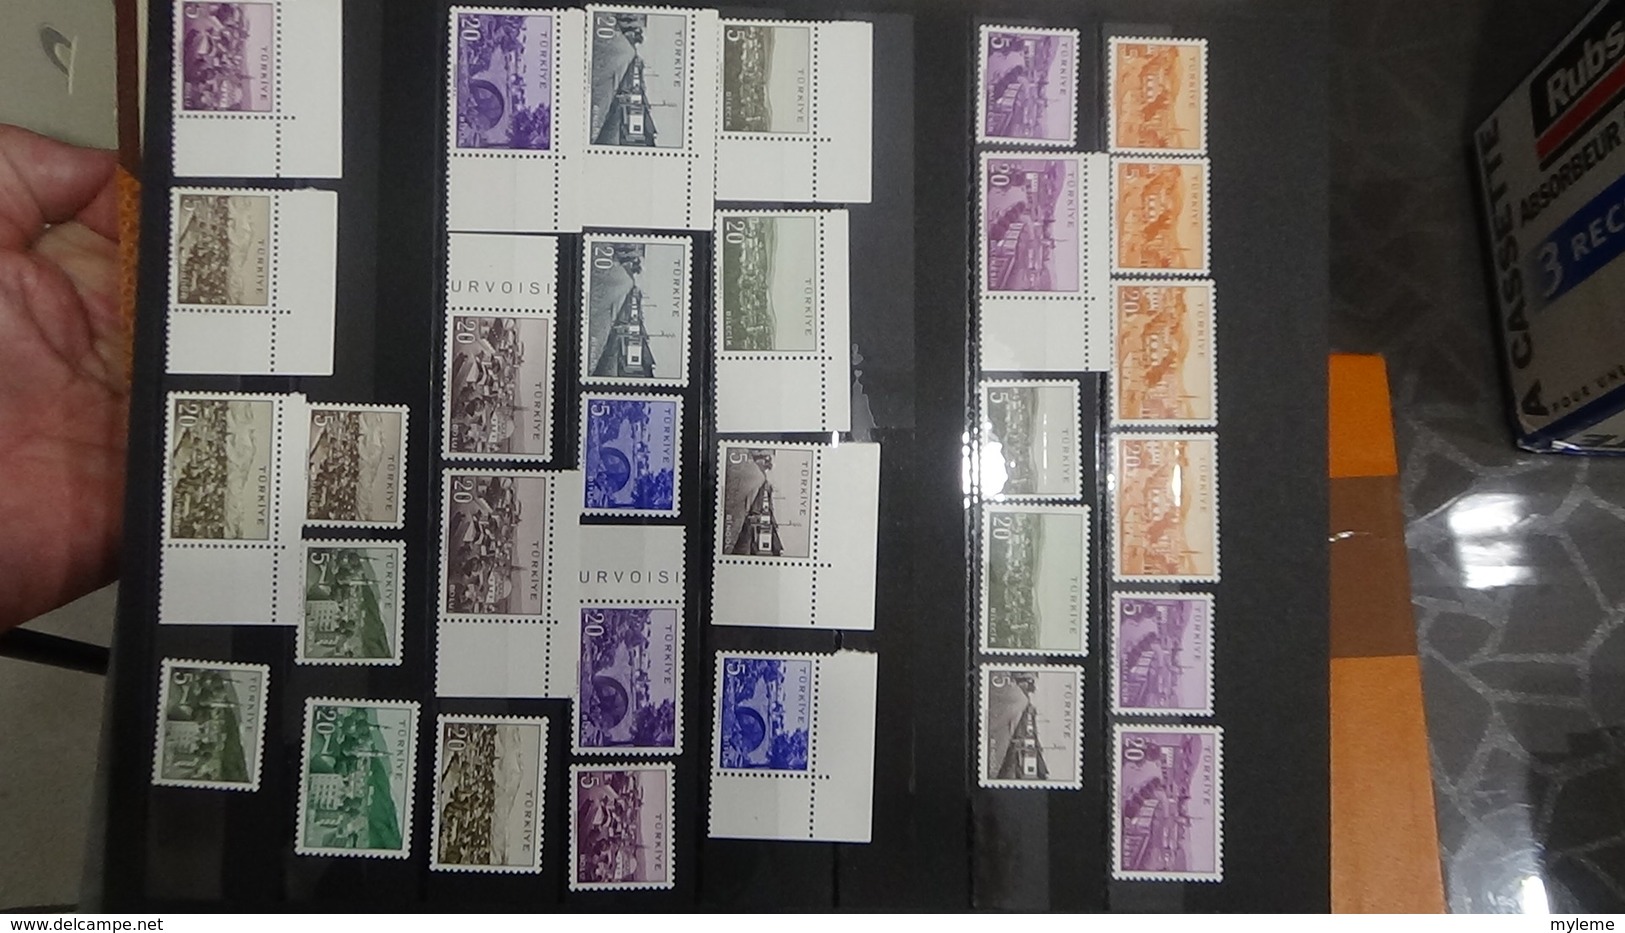 Collection de TURQUIE timbres et blocs **.  Très sympa !!!